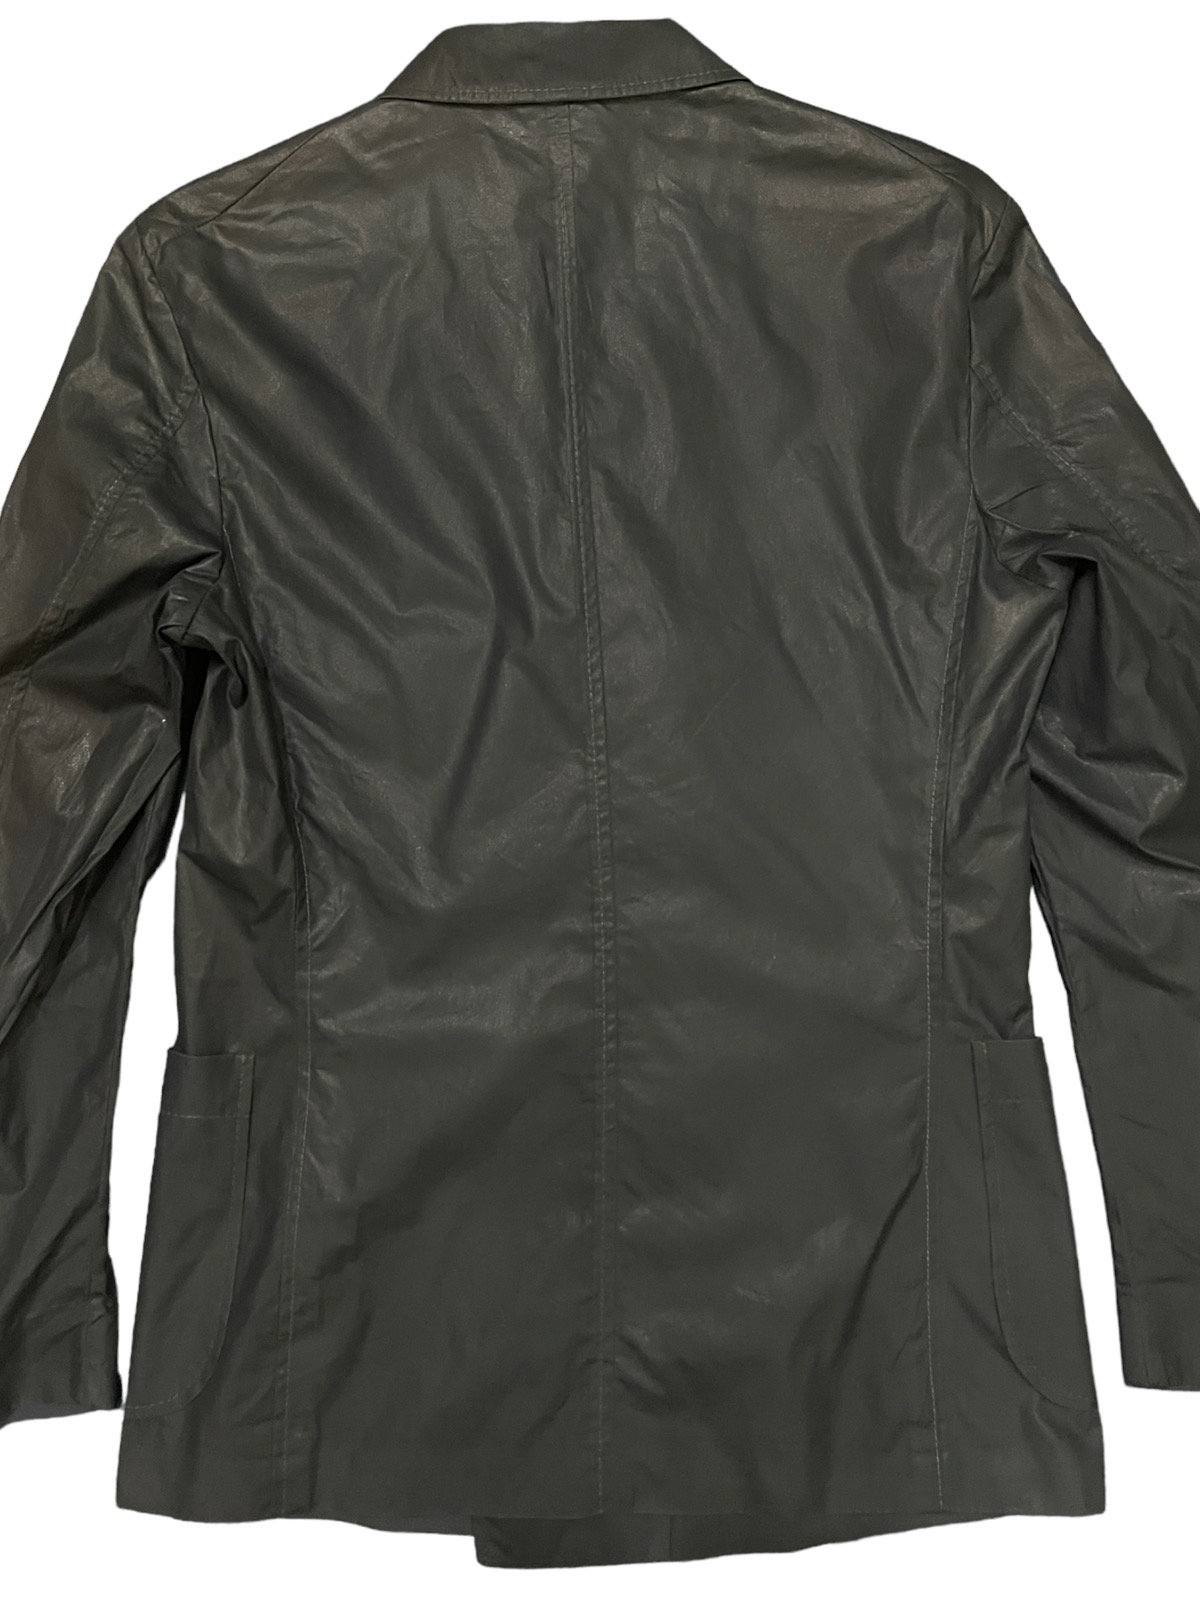 Z Zegna button blazer jacket rayon jacket - 4